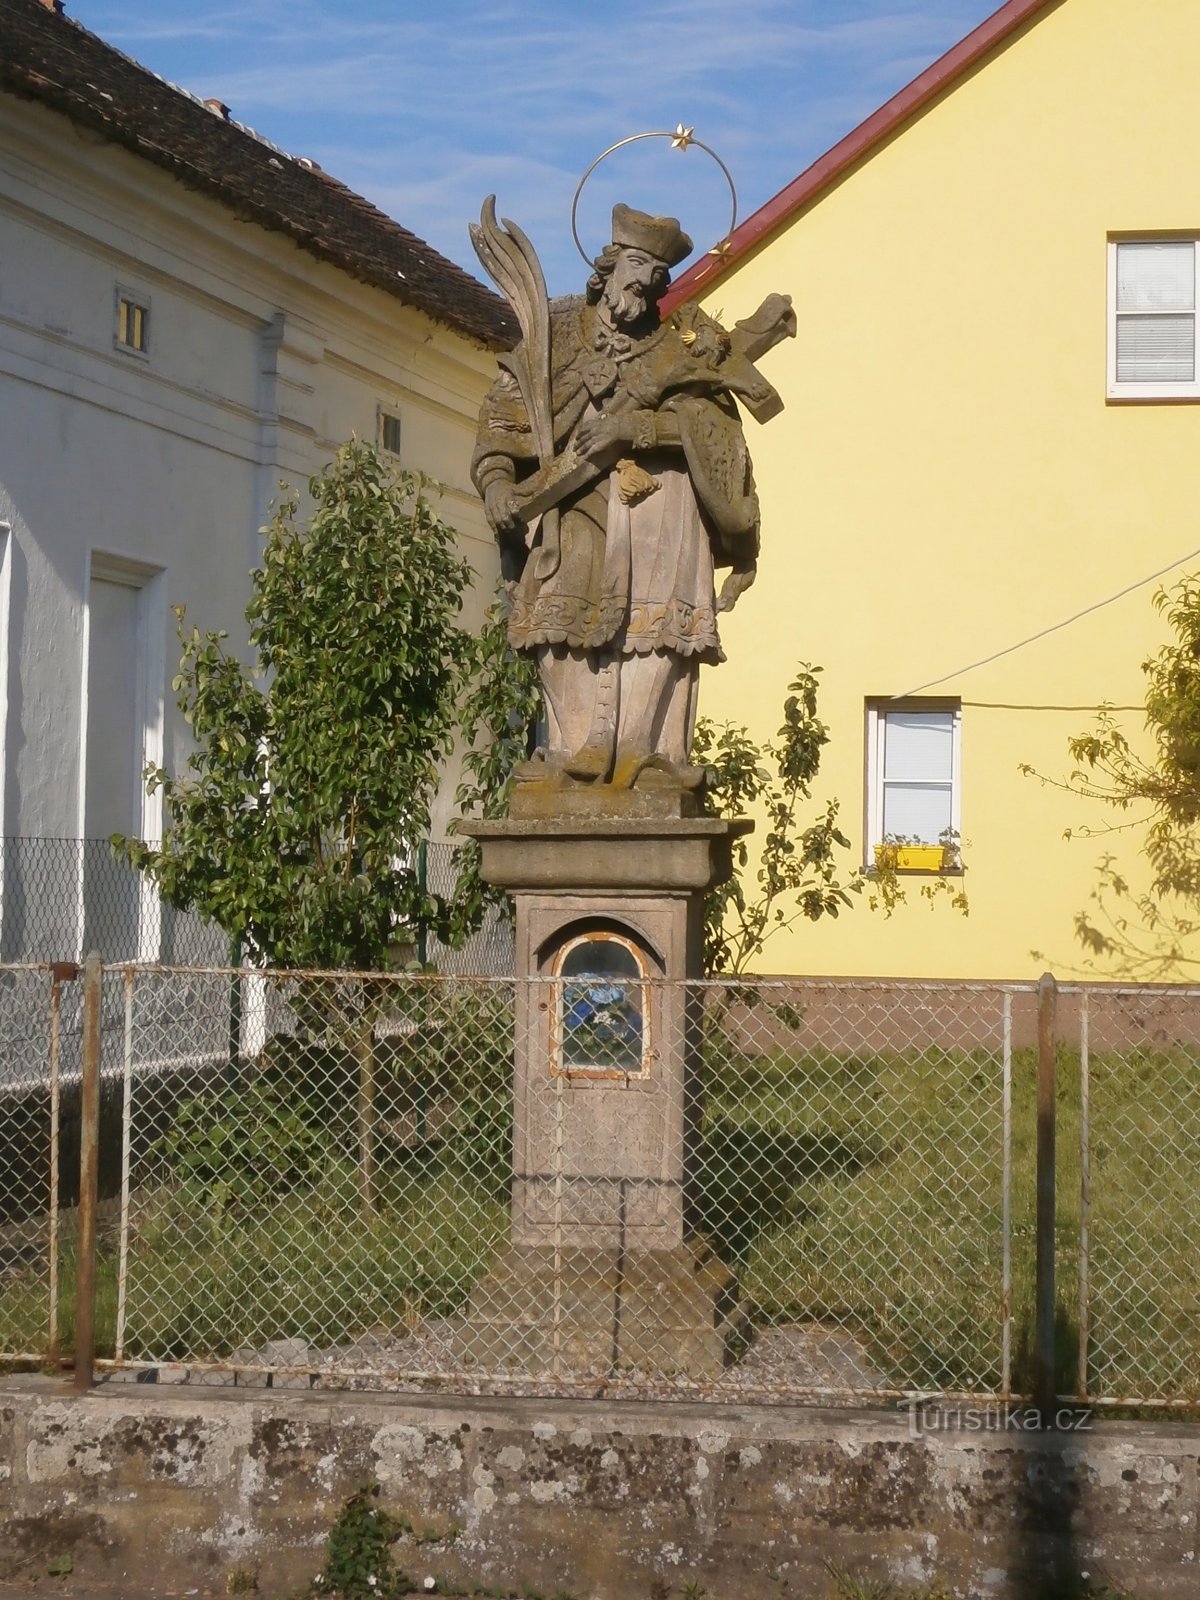 estatua de san Juan de Nepomuco, que anteriormente estaba acompañado por el campanario original (Černožice